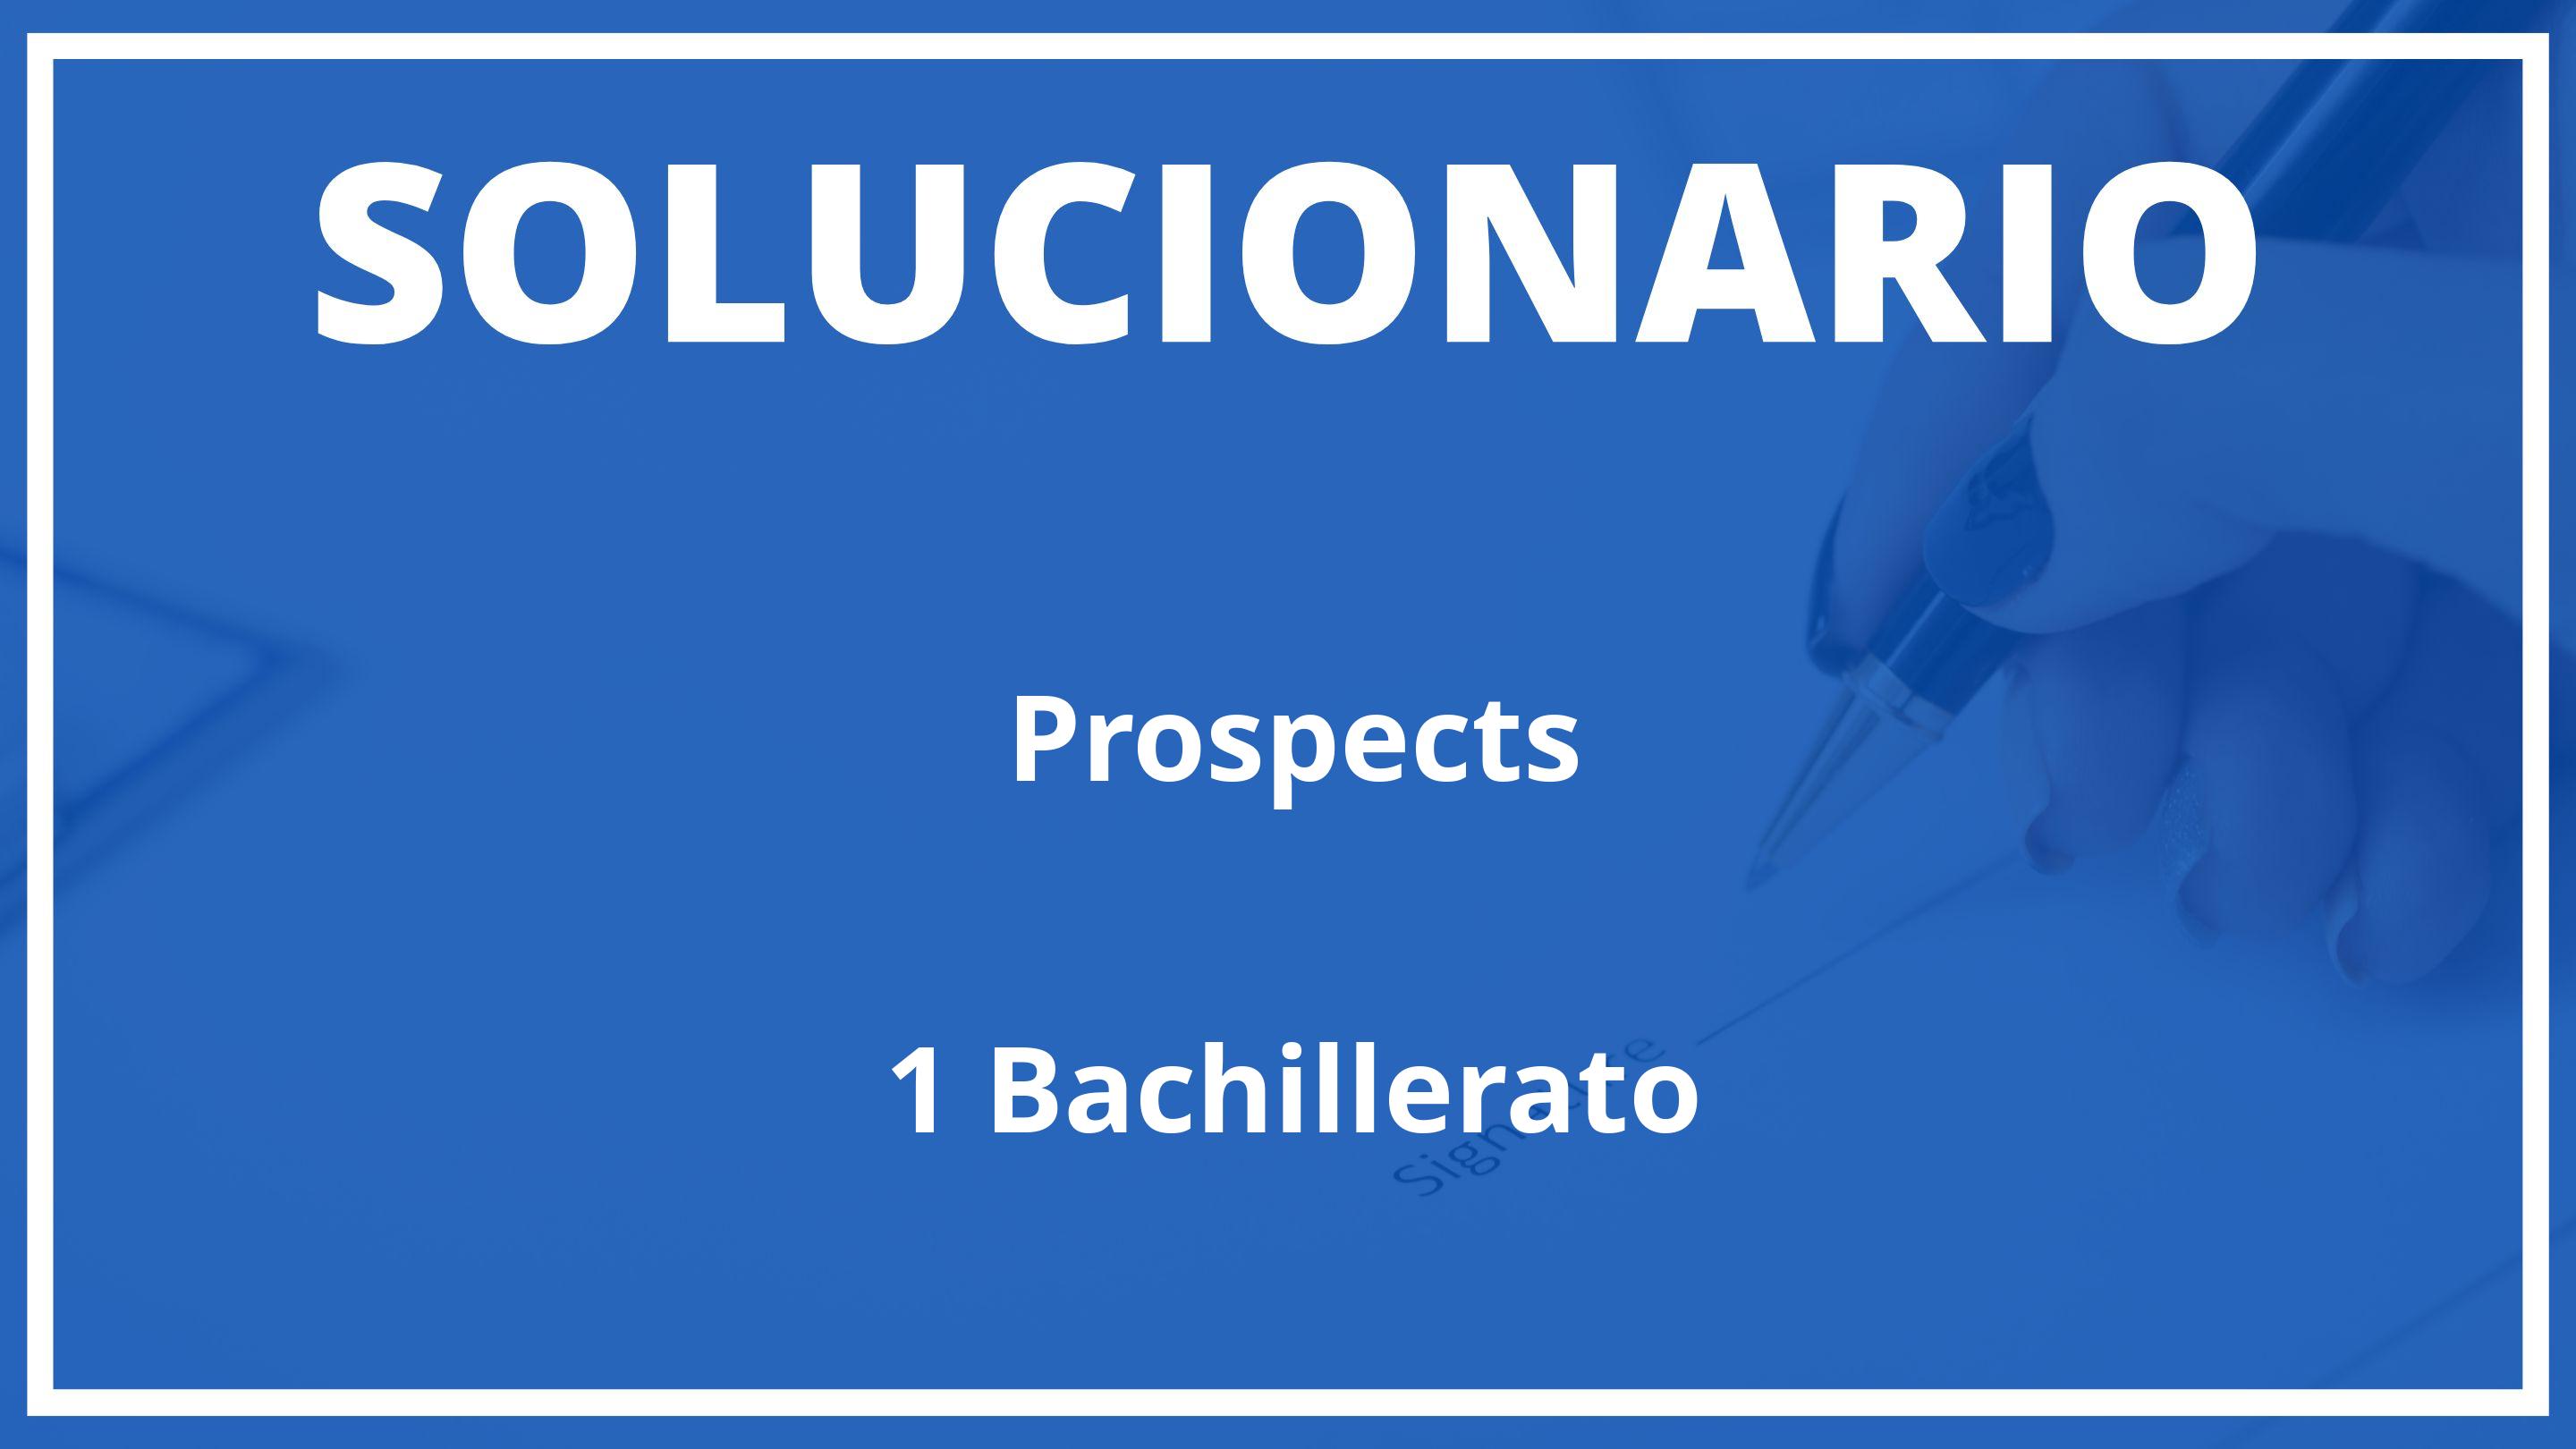 Solucionario Prospects  MacMillan 1 Bachillerato